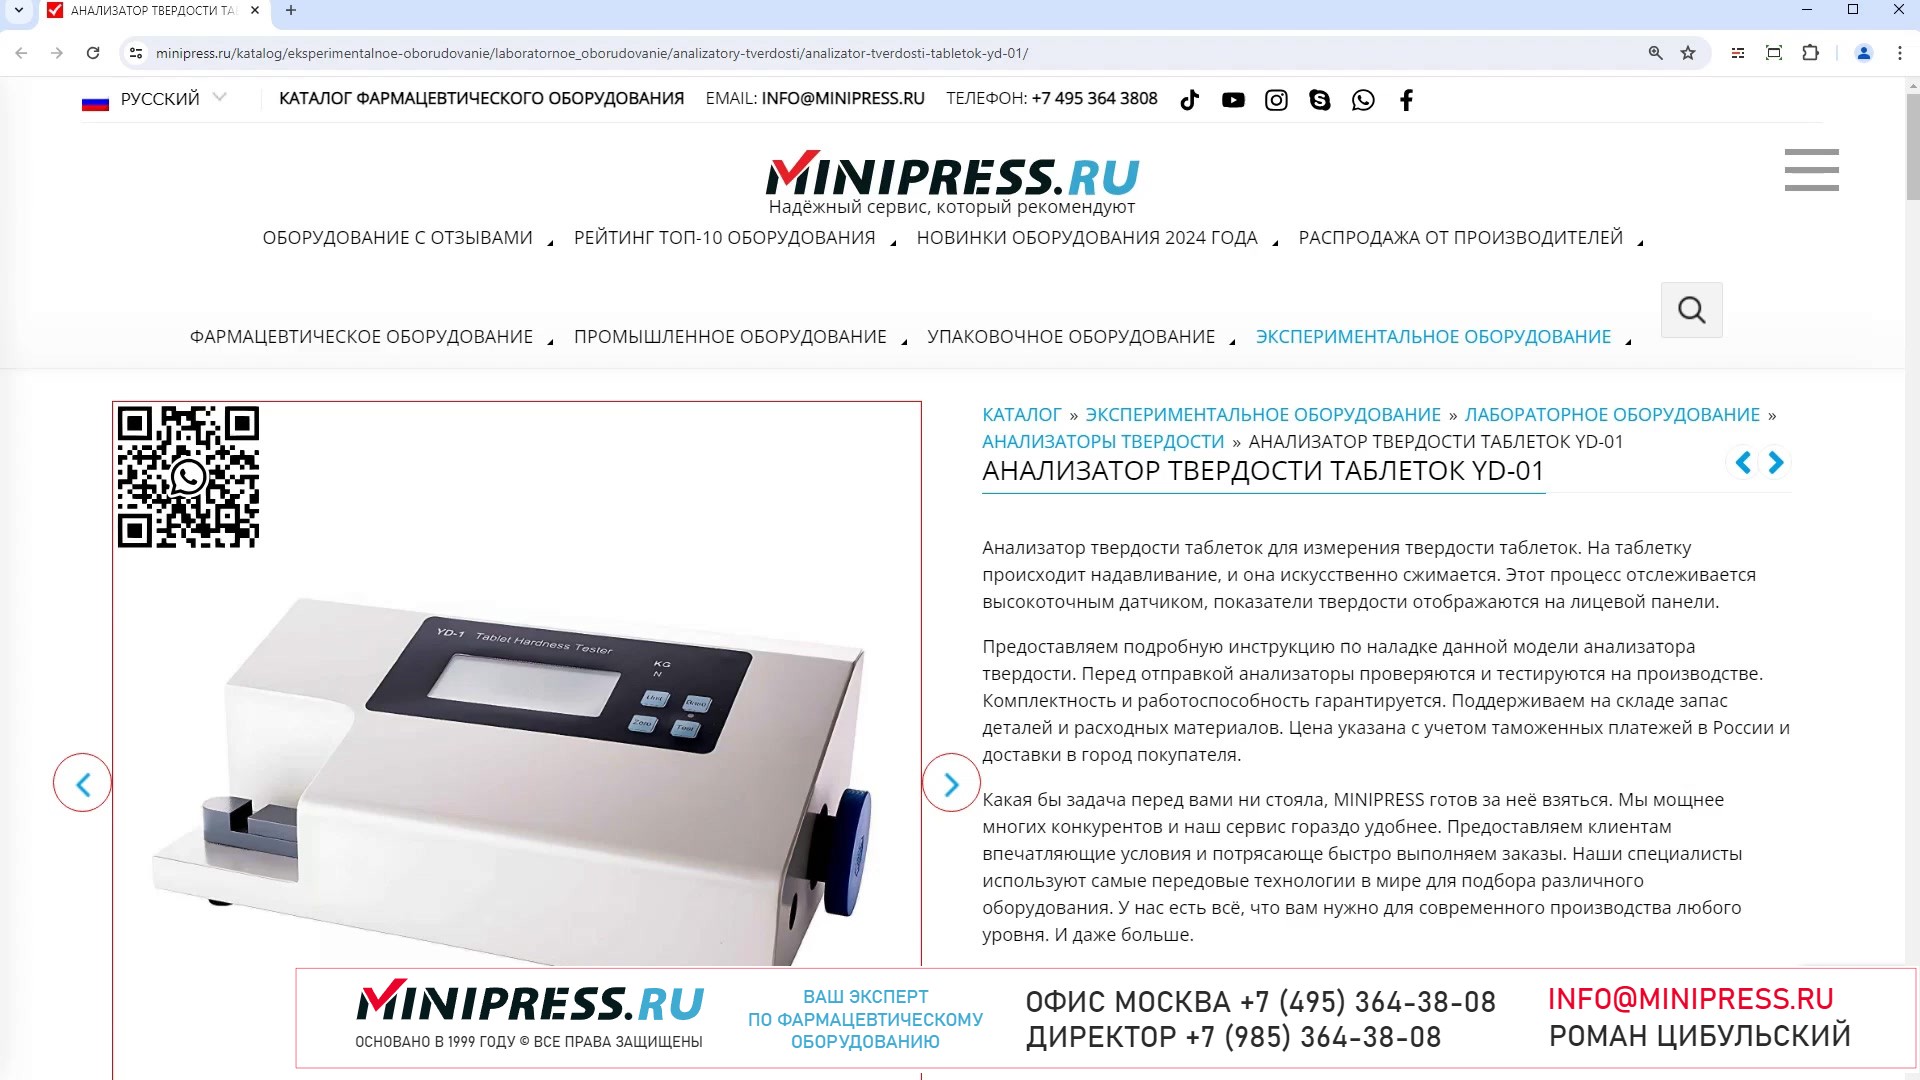 Minipress.ru Анализатор твердости таблеток YD-01